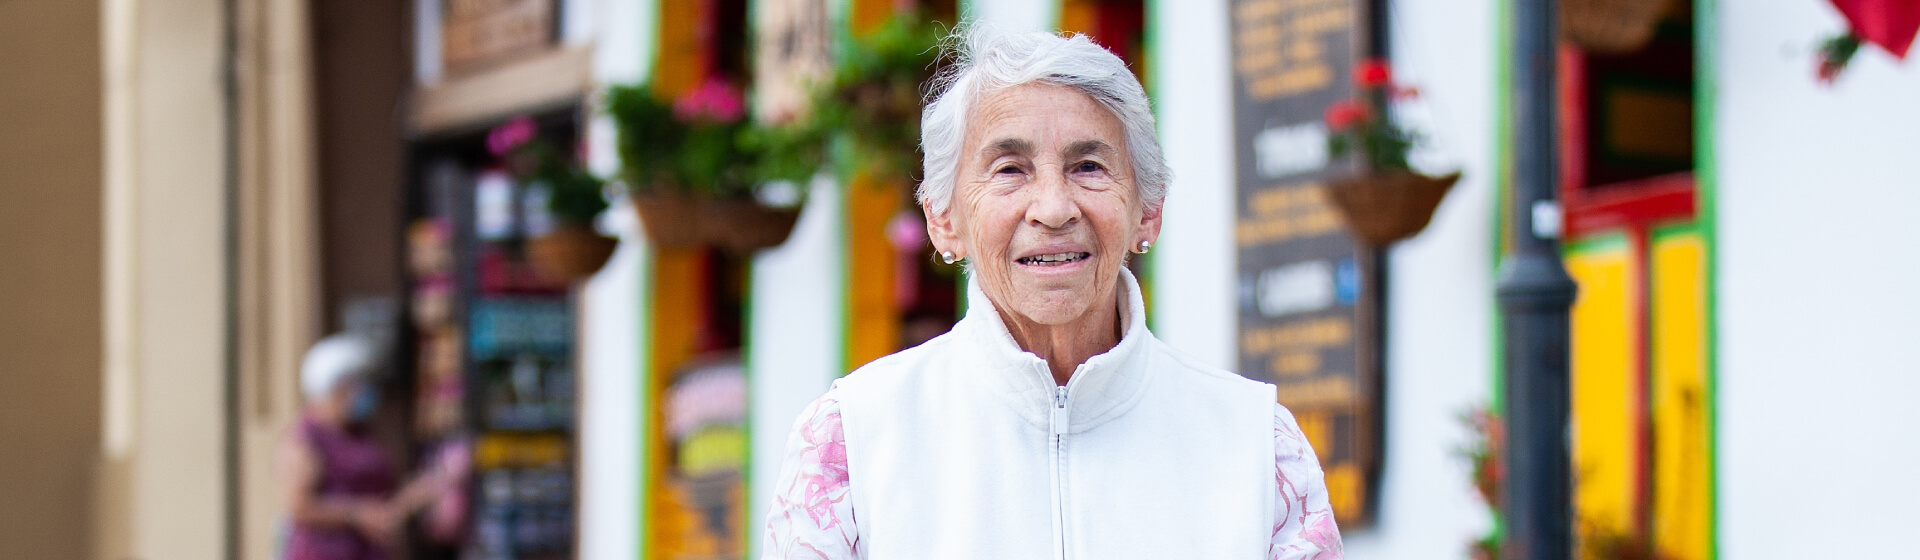 ¿Cómo reducir la brecha de género en el sistema pensional colombiano? 